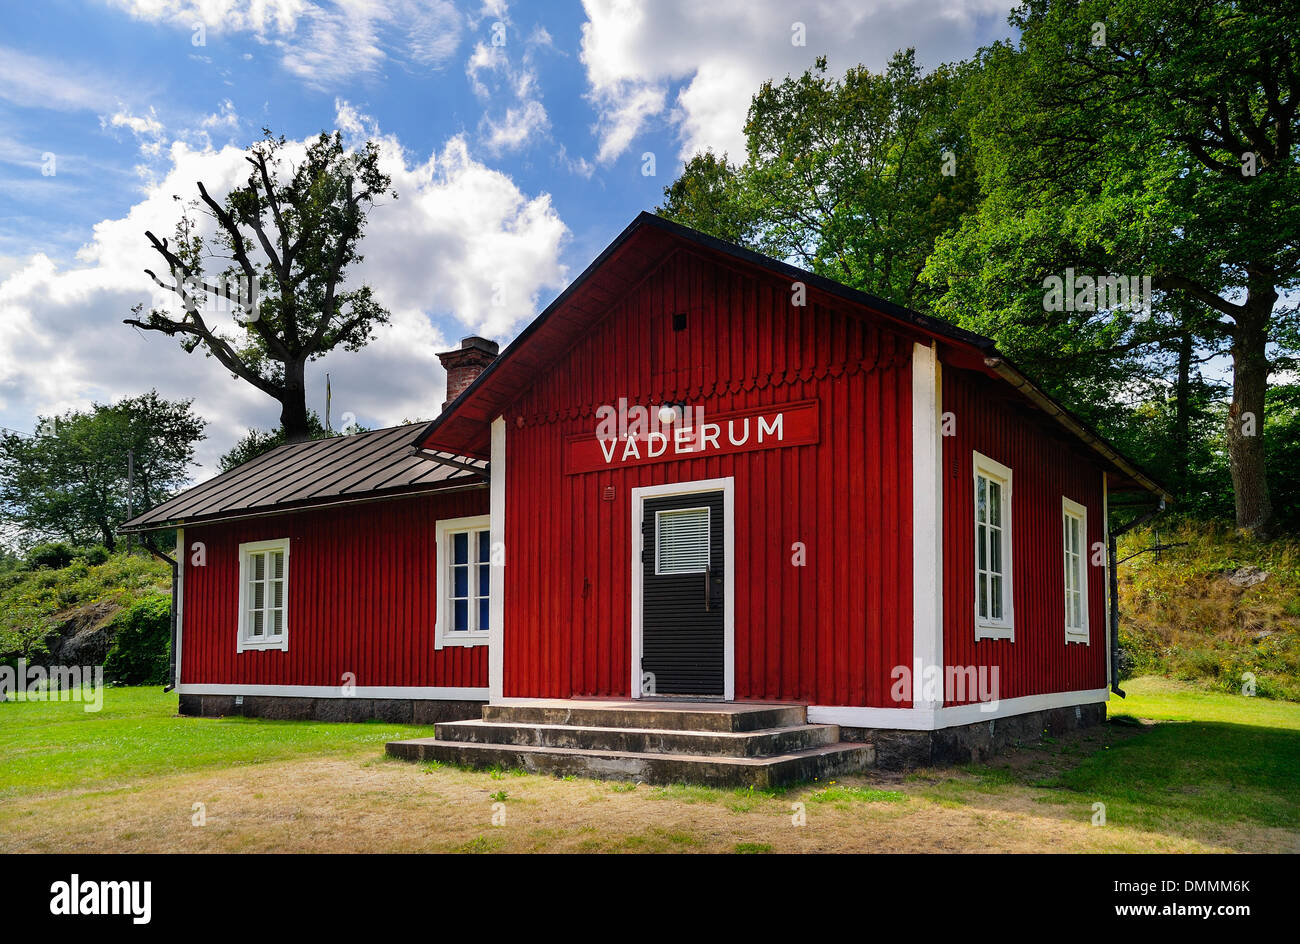 Sweden, Smaland, Kalmar laen, Vimmerby, Vaederum, railway station Stock Photo